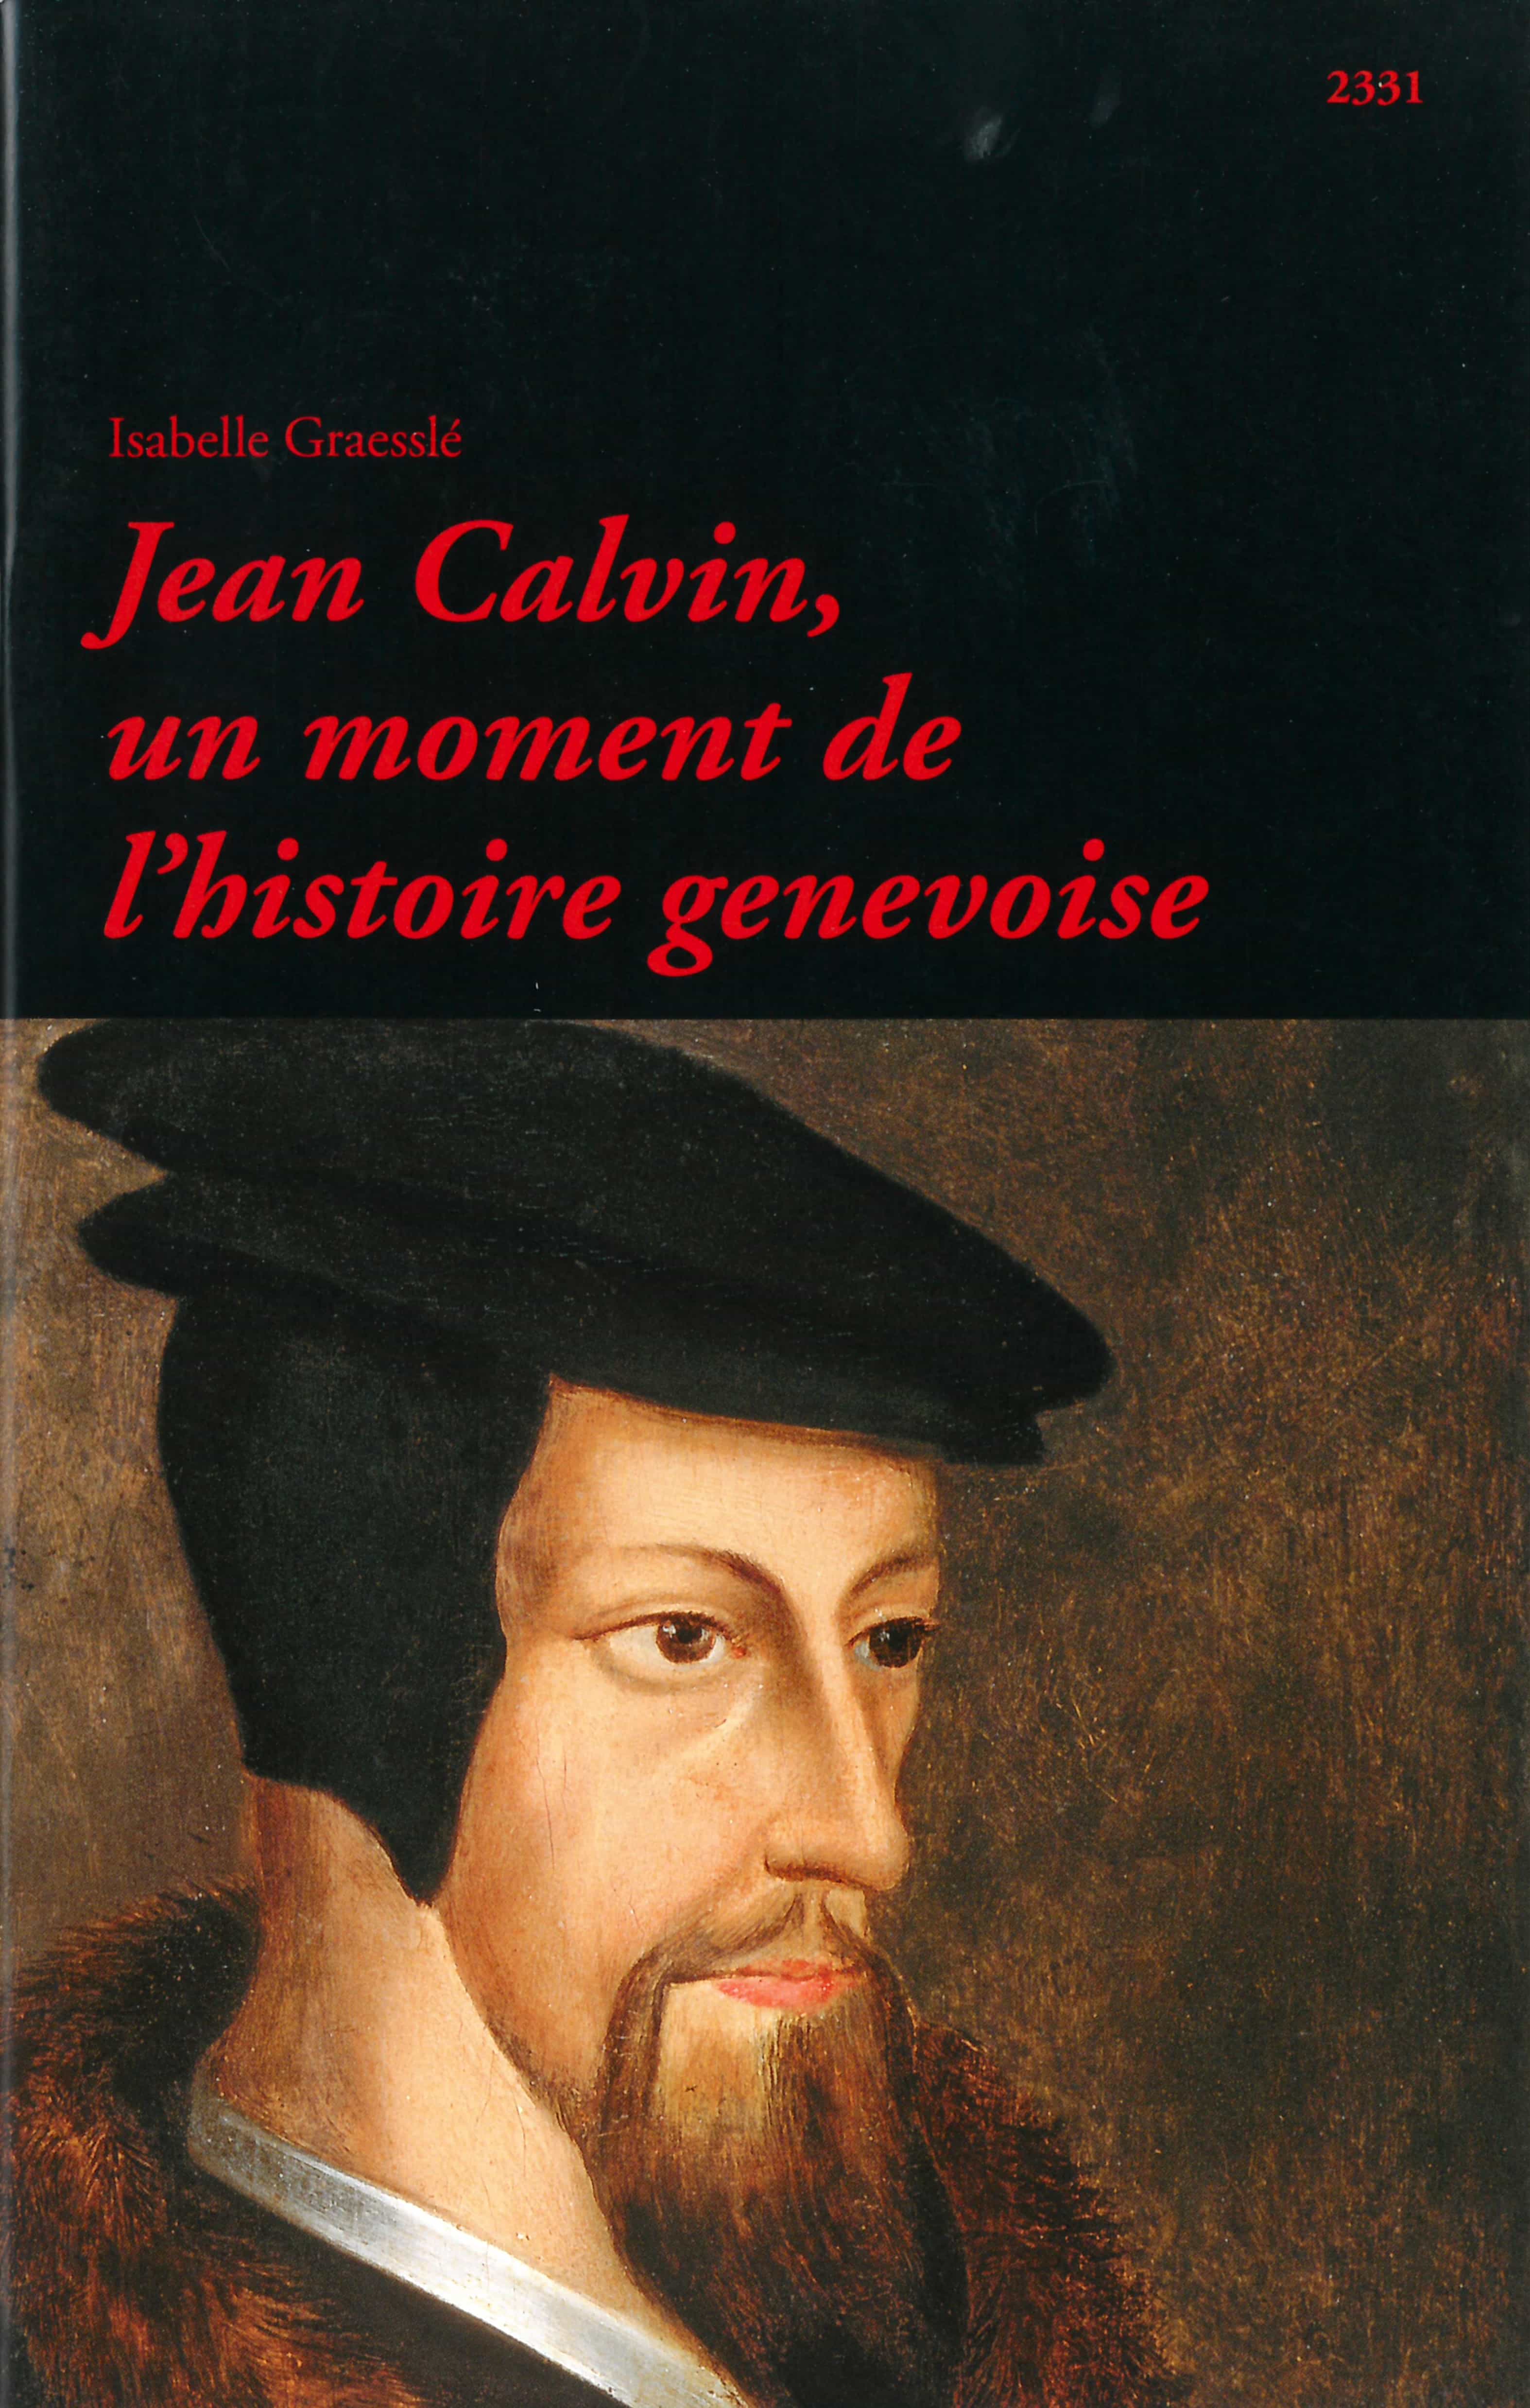 Jean Calvin, un moment de l'histoire genevoise, un livre d’Isabelle Graesslé, éditions de l'OSL, réformation, Suisse